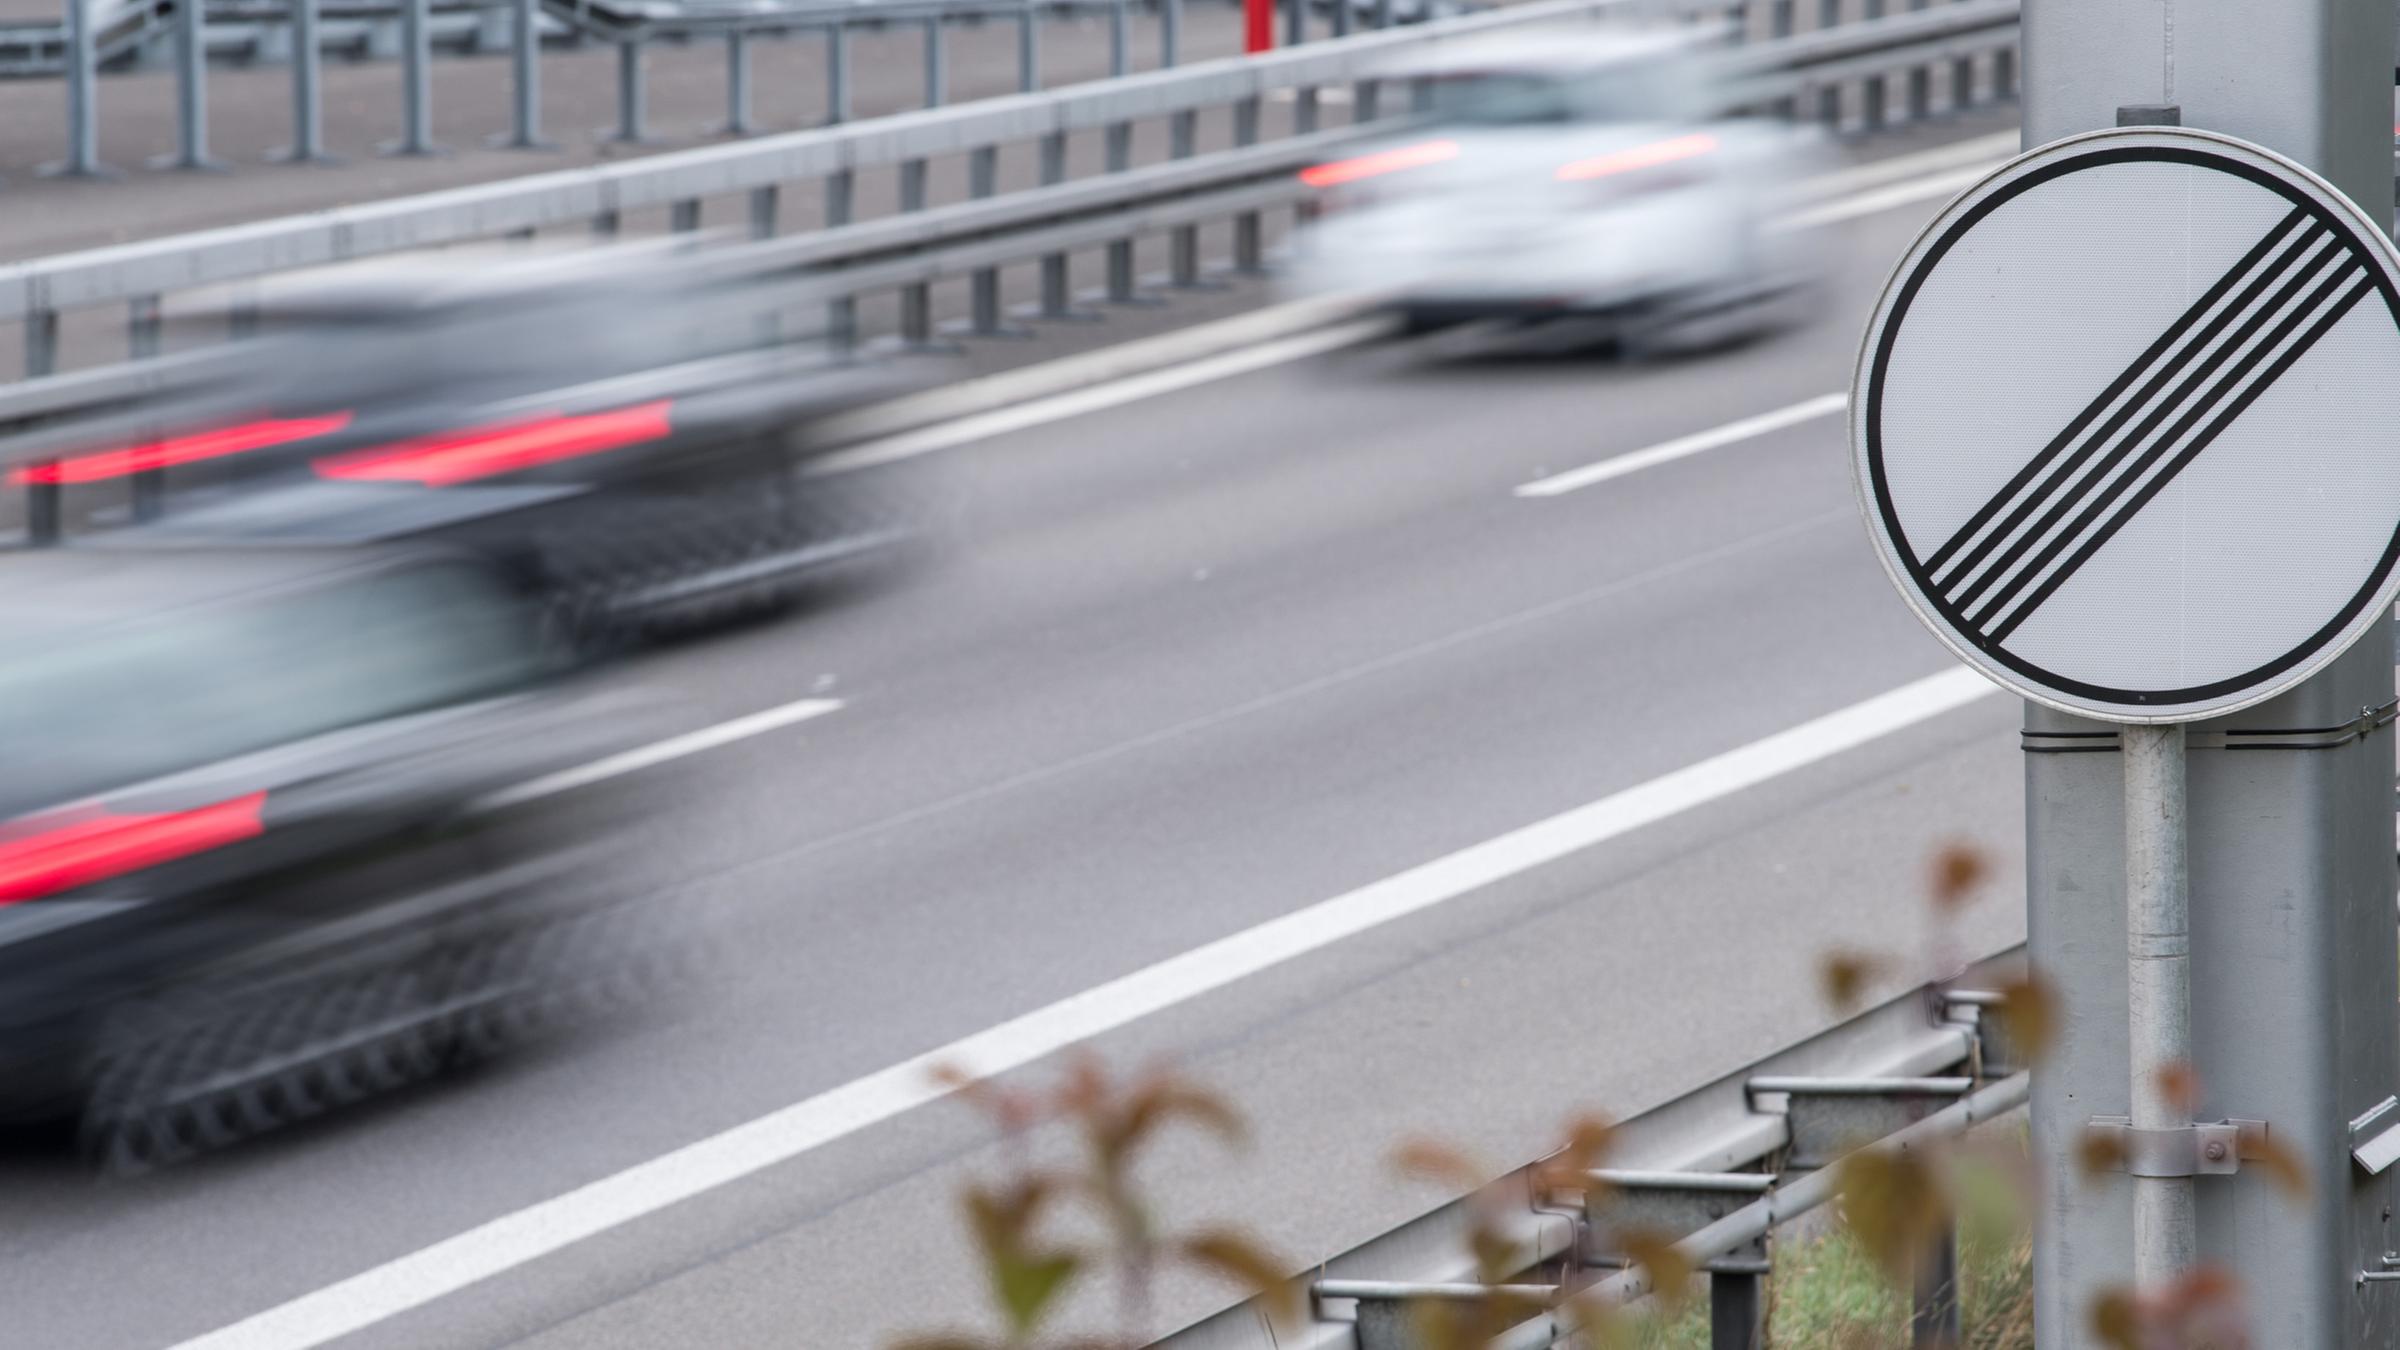 Archiv: Autos fahren am 19.10.2017 auf der Autobahn A81 bei Herrenberg auf einem Abschnitt ohne Geschwindigkeitsbegrenzung